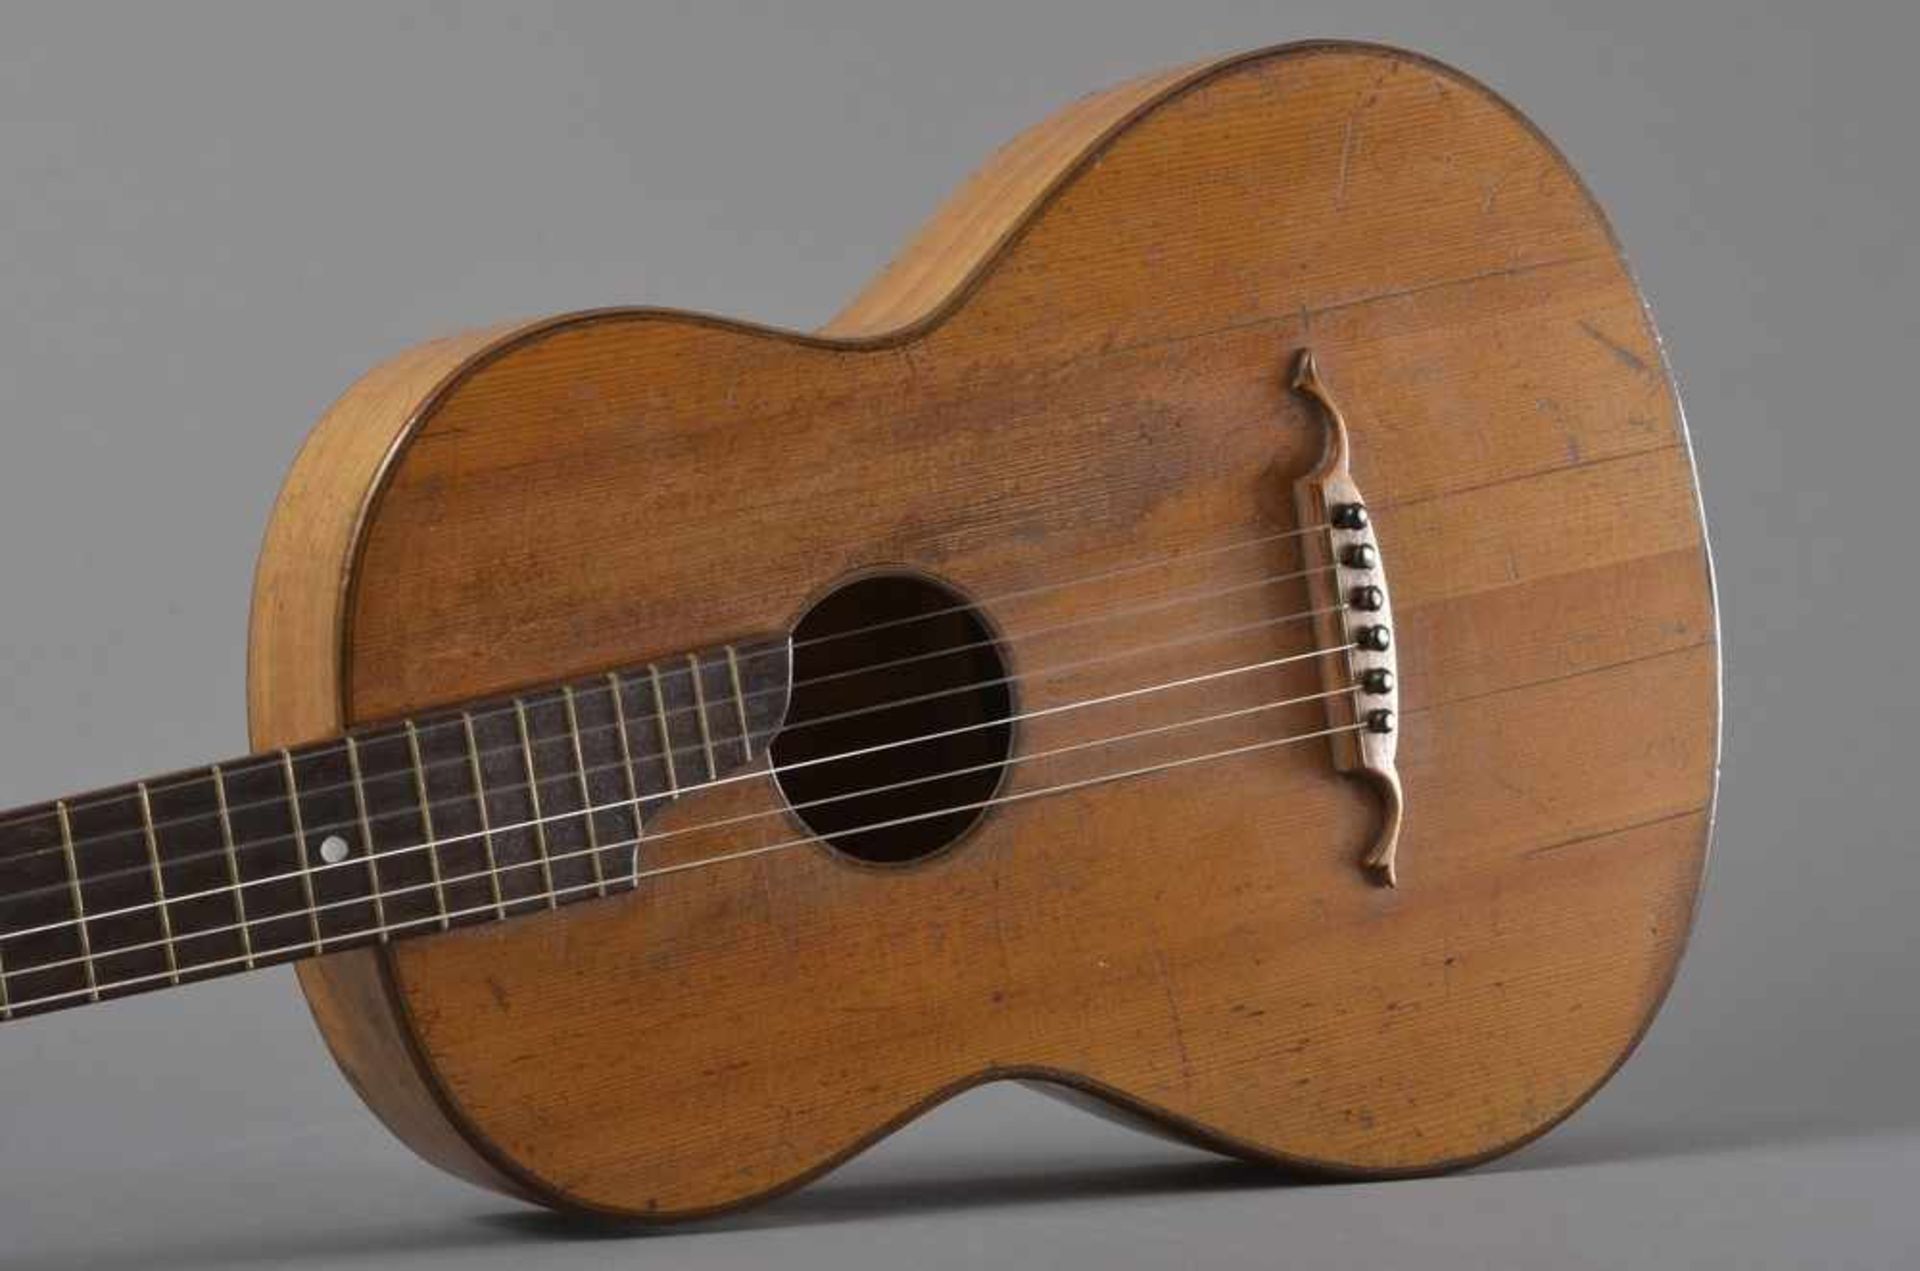 Historische Gitarre, Mensur 62cm, Gesamtlänge 93cm, Saitenhöhe 4mm, ca. 100 Jahre alt, spielbar - Image 4 of 8